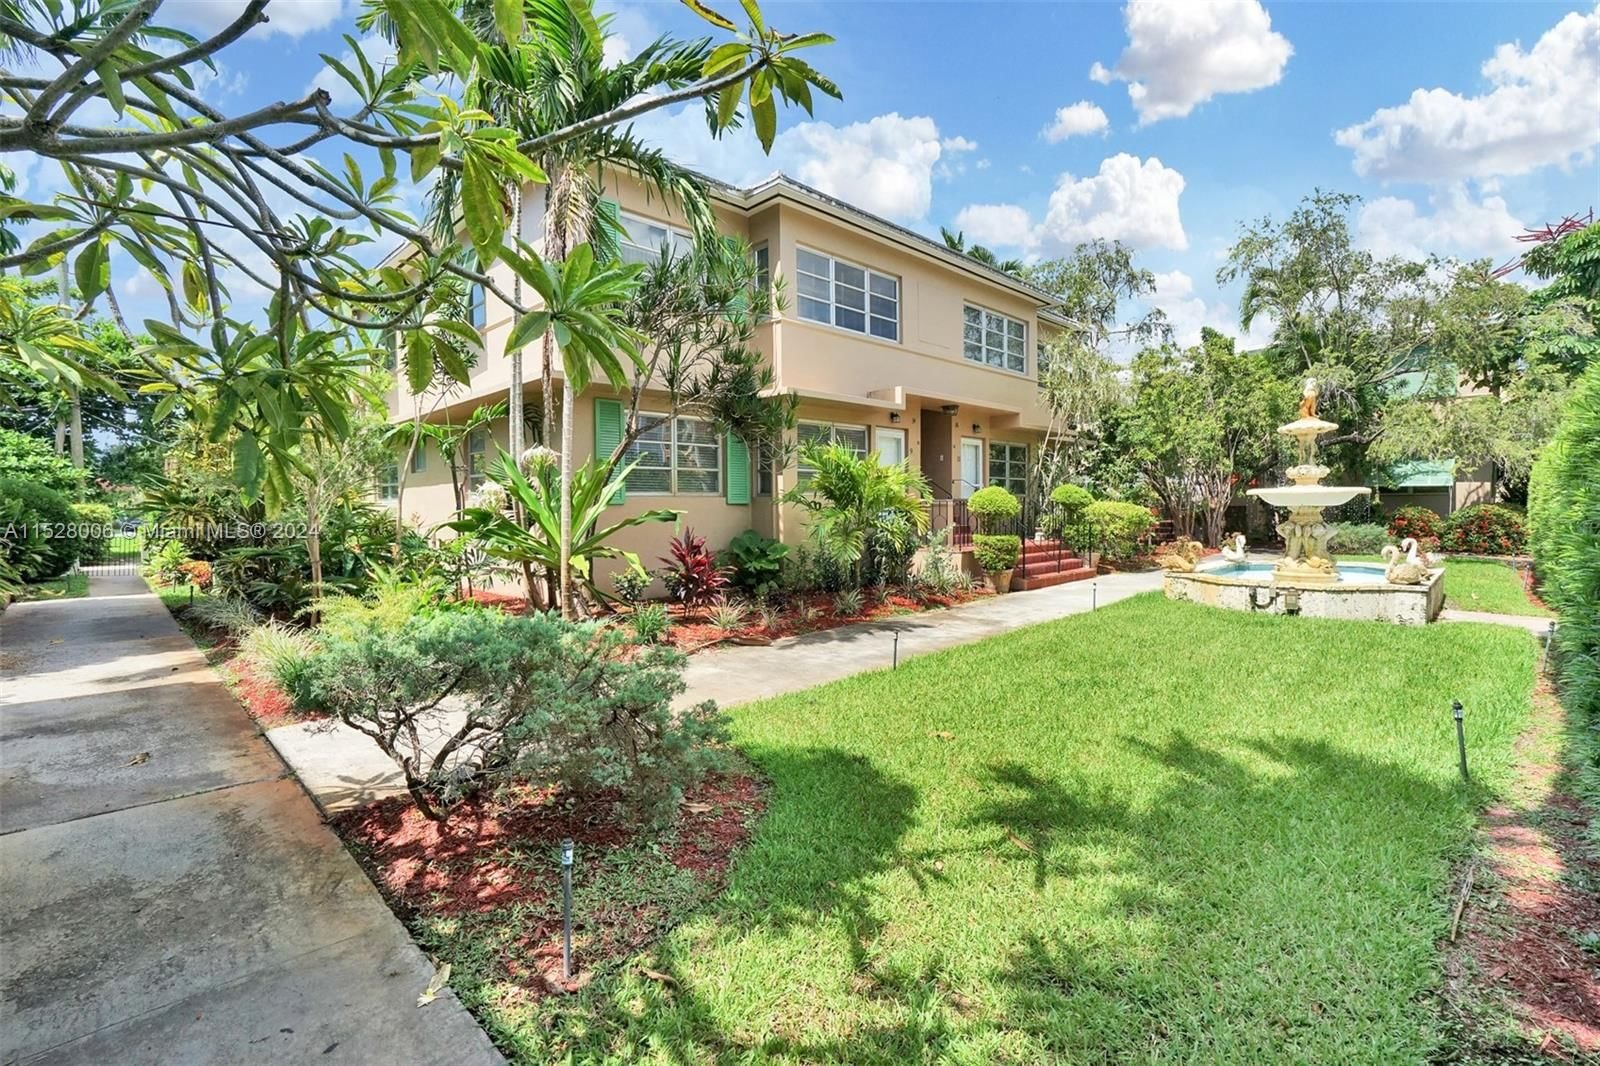 Real estate property located at 30 Almeria Ave #5, Miami-Dade County, ALMERIA GARDENS CONDO, Coral Gables, FL